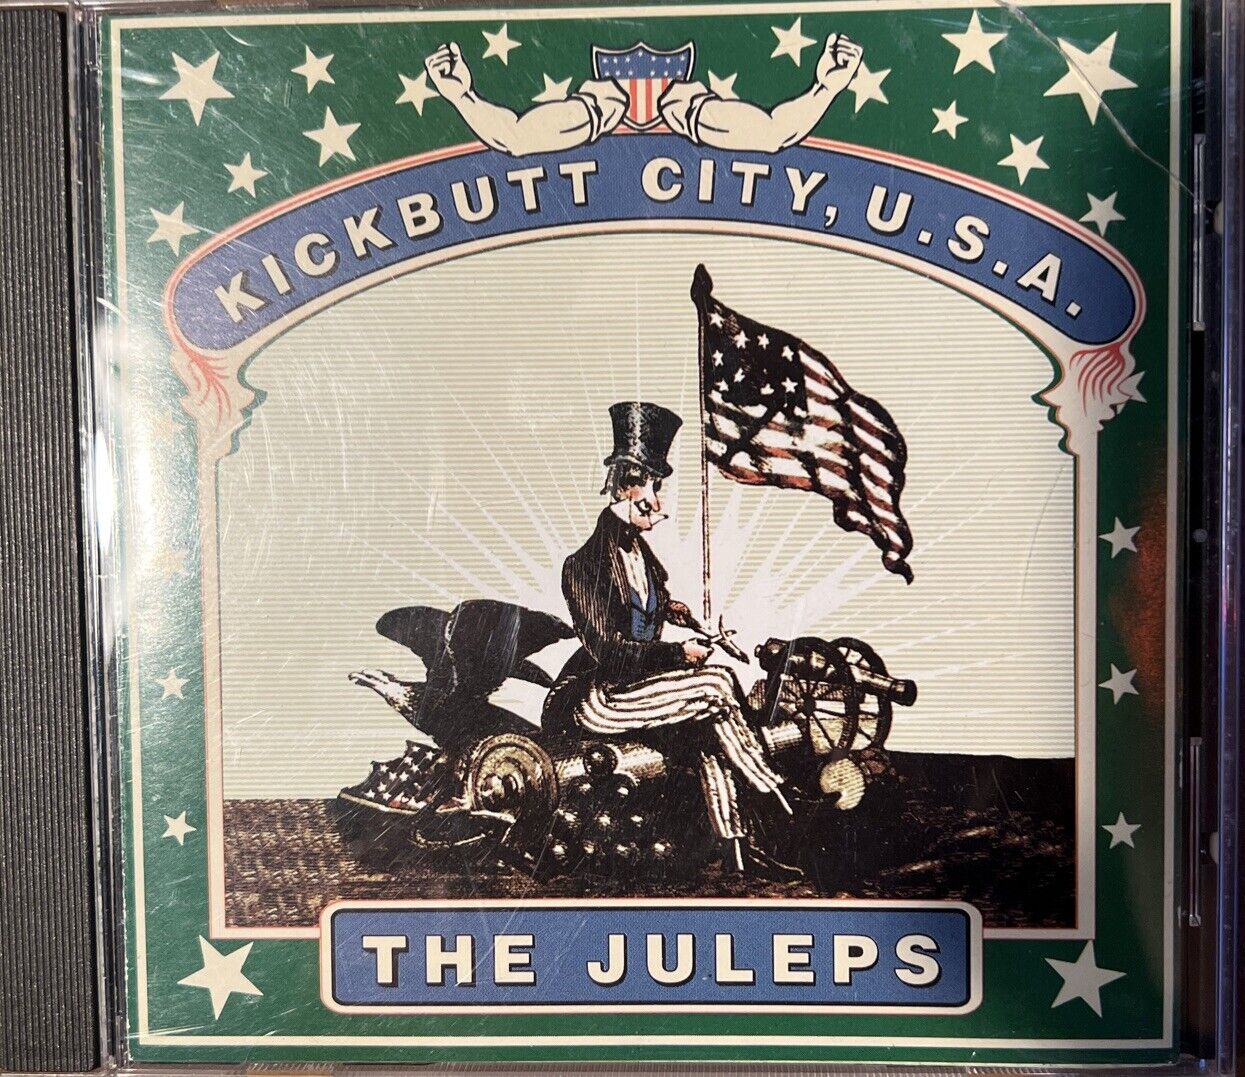 Kickbutt City U.S.A. by Juleps CD (Monsterdisc, 1997)